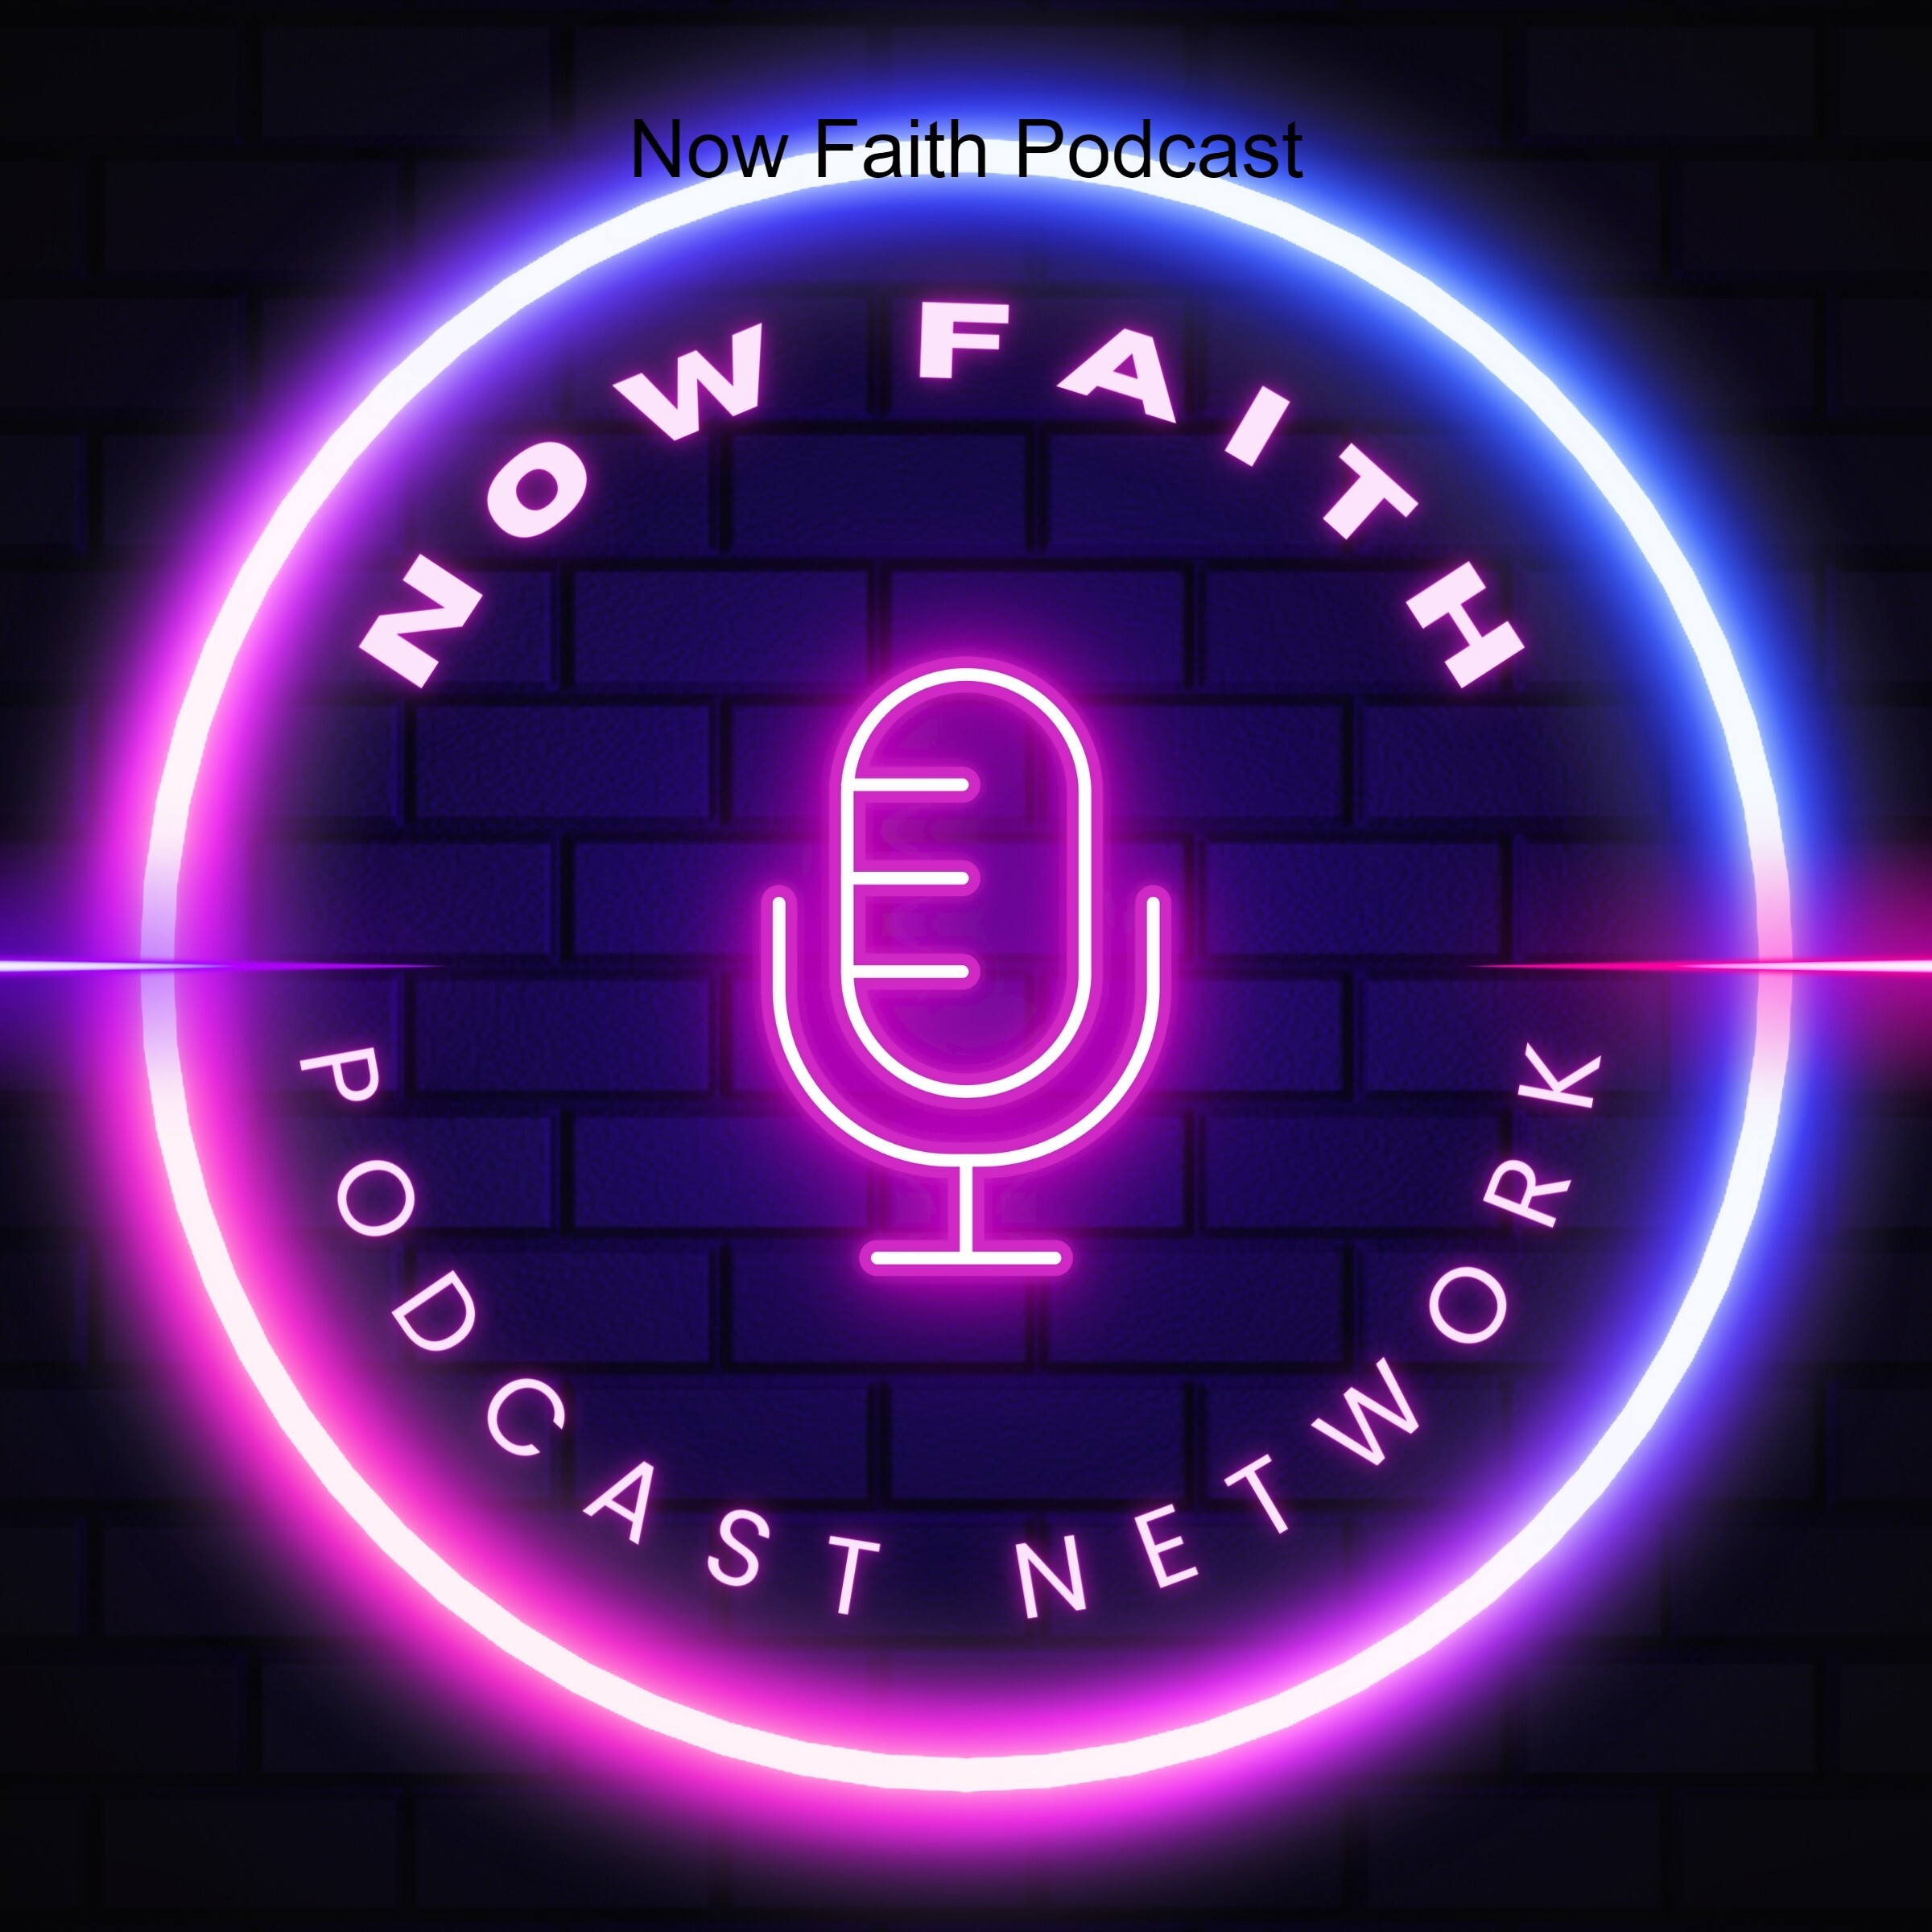 Now Faith Podcast Network